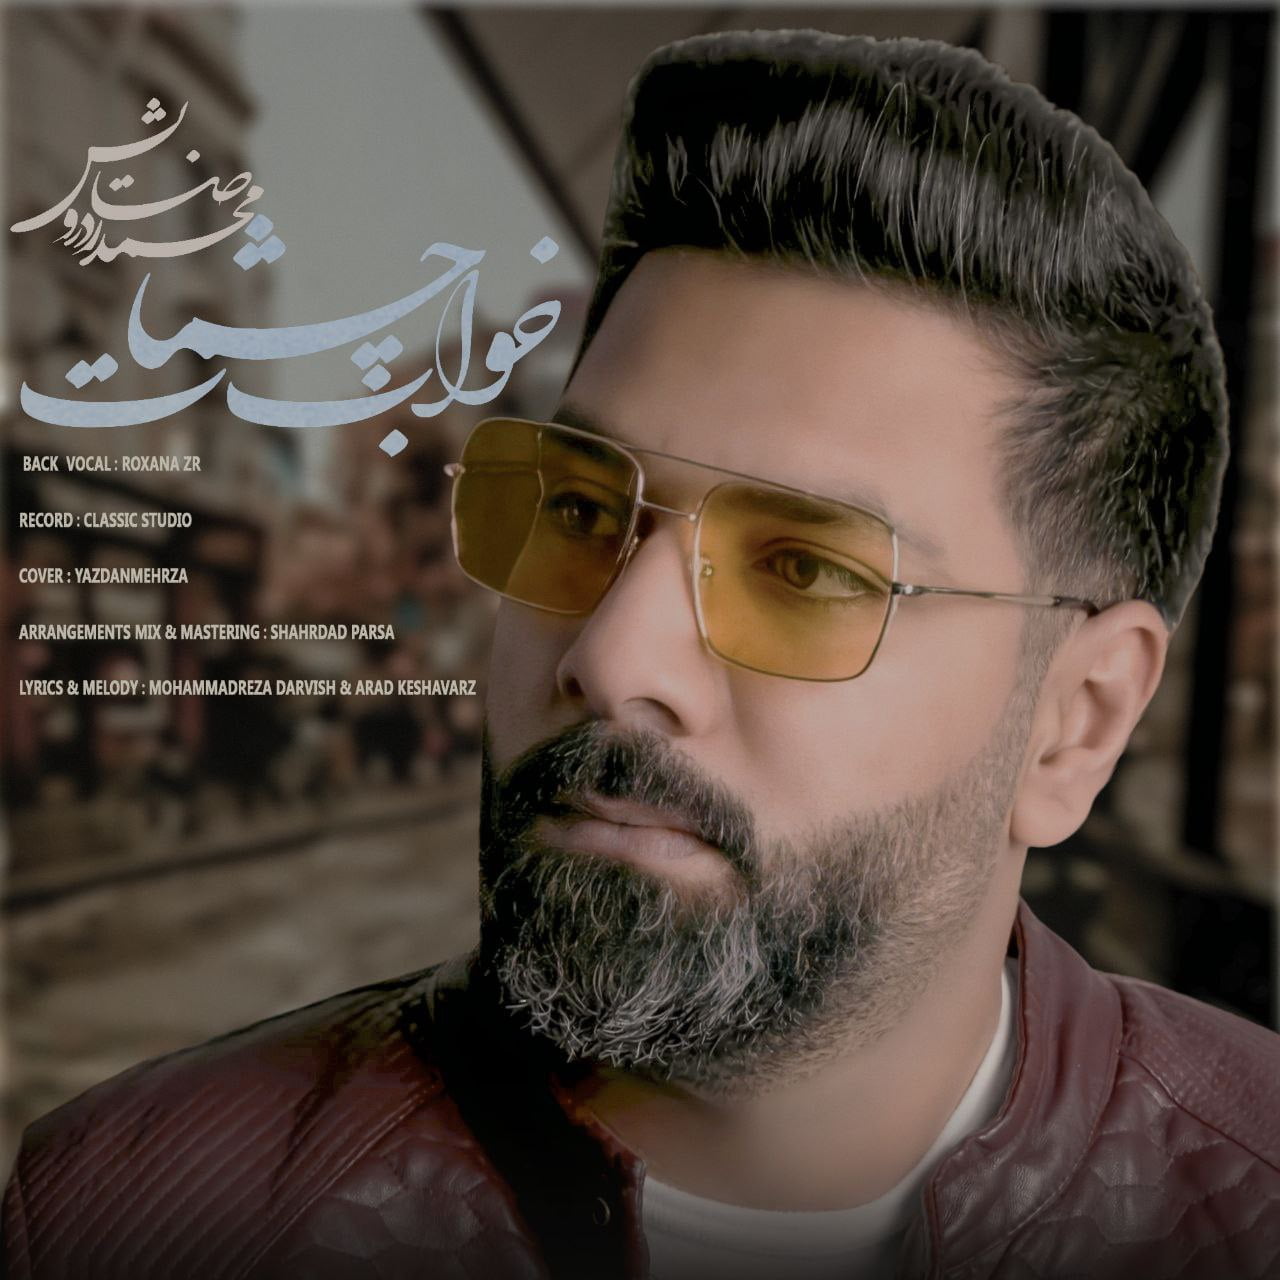 دانلود آهنگ جدید محمدرضا درویش با عنوان خواب چشمات